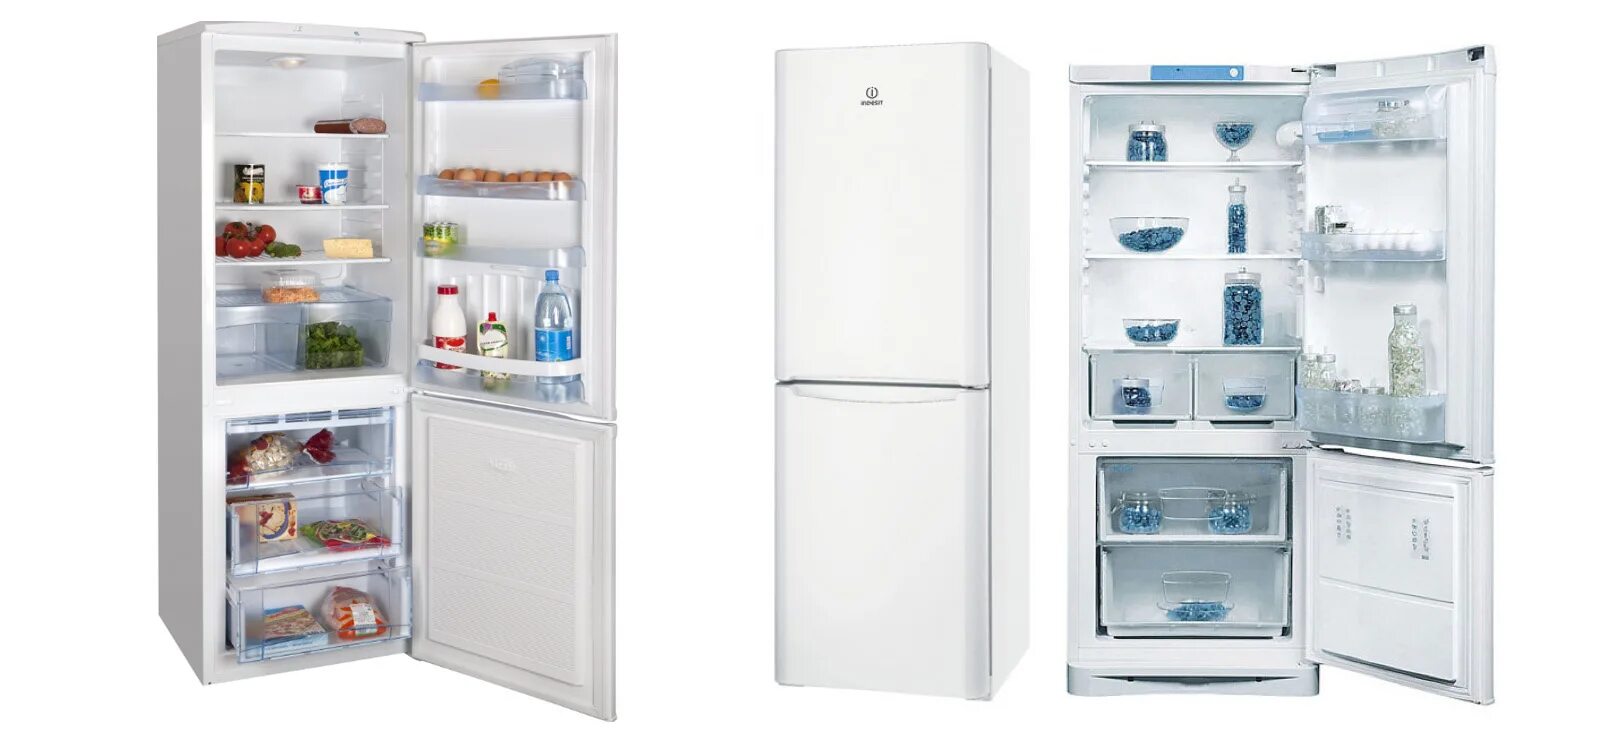 Новые холодильники индезит. Индезит 101 холодильник.